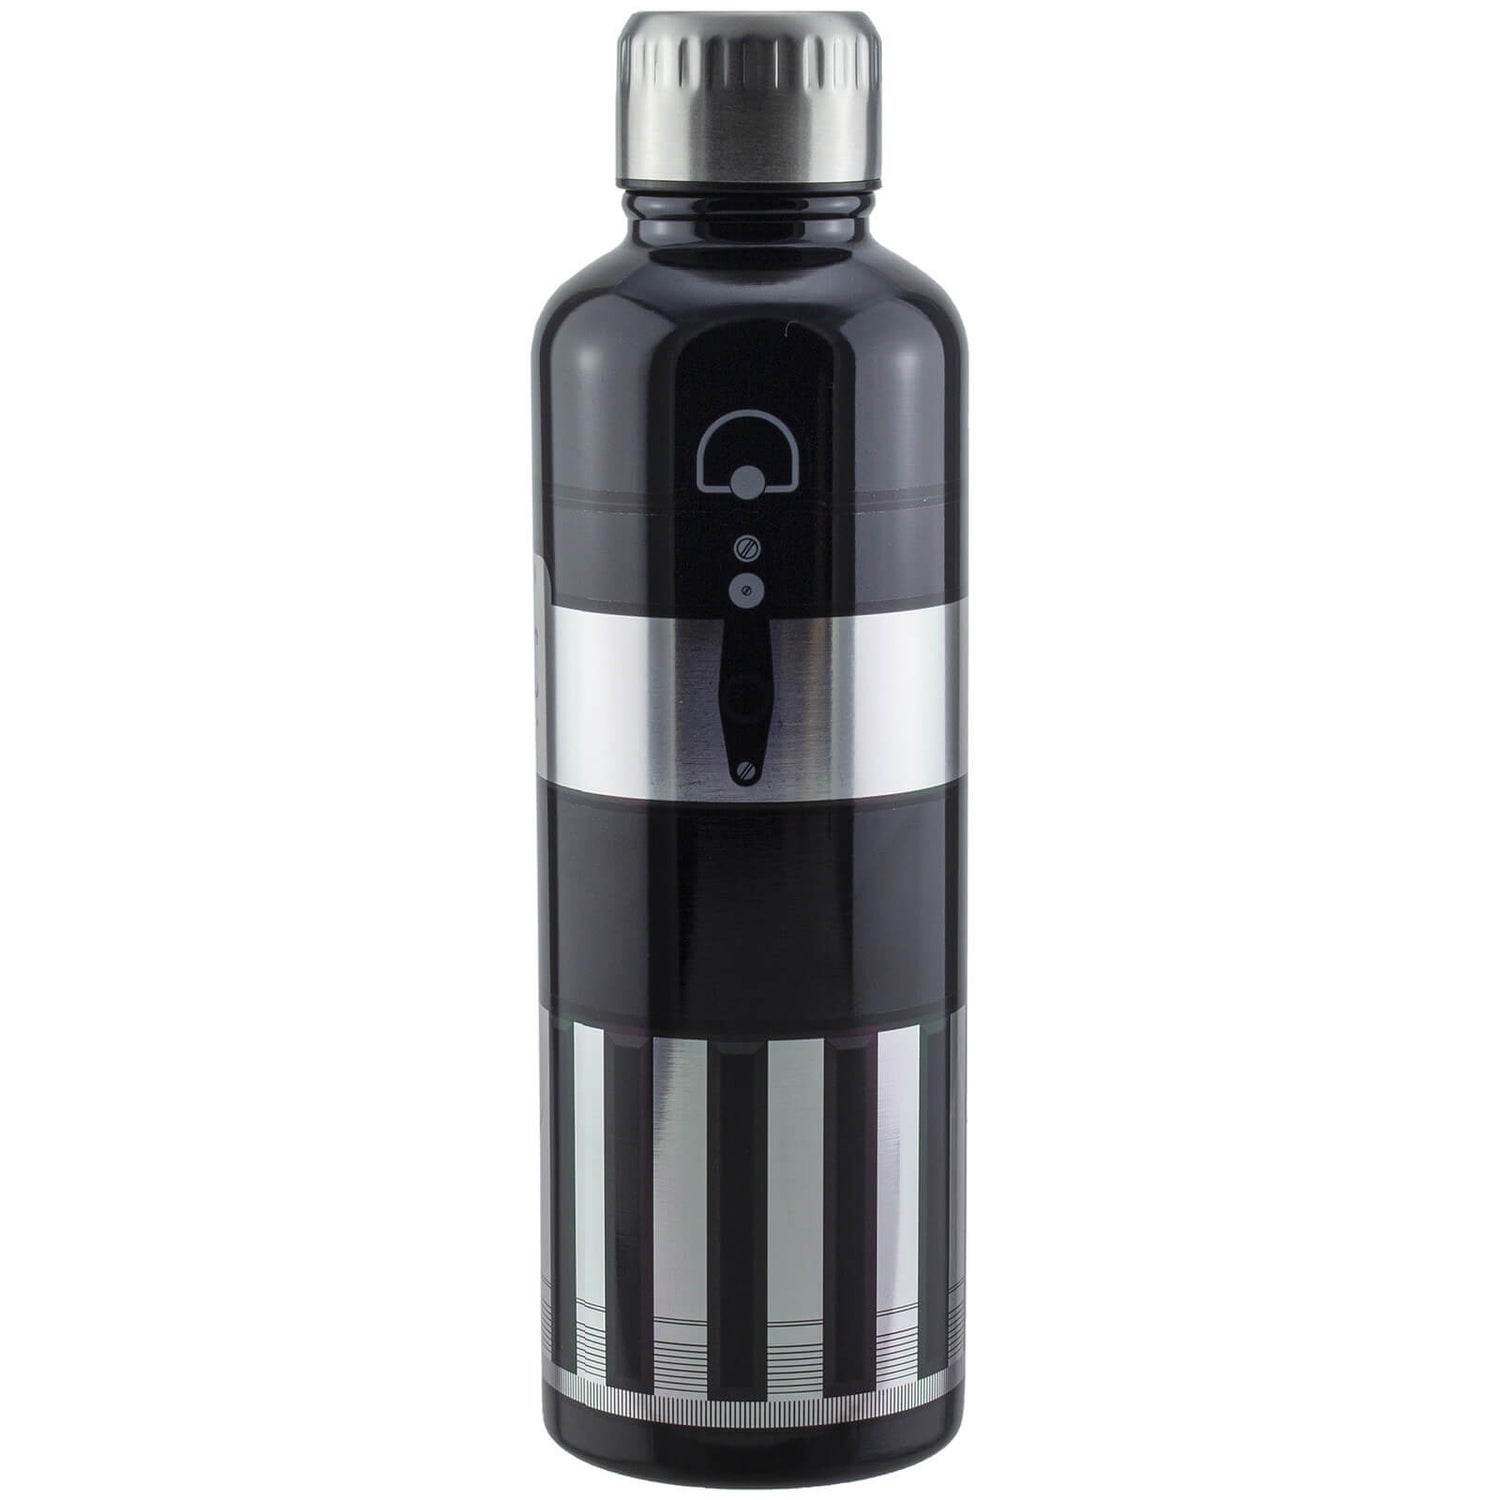 Star Wars Darth Vader Lightsaber Metal Water Bottle